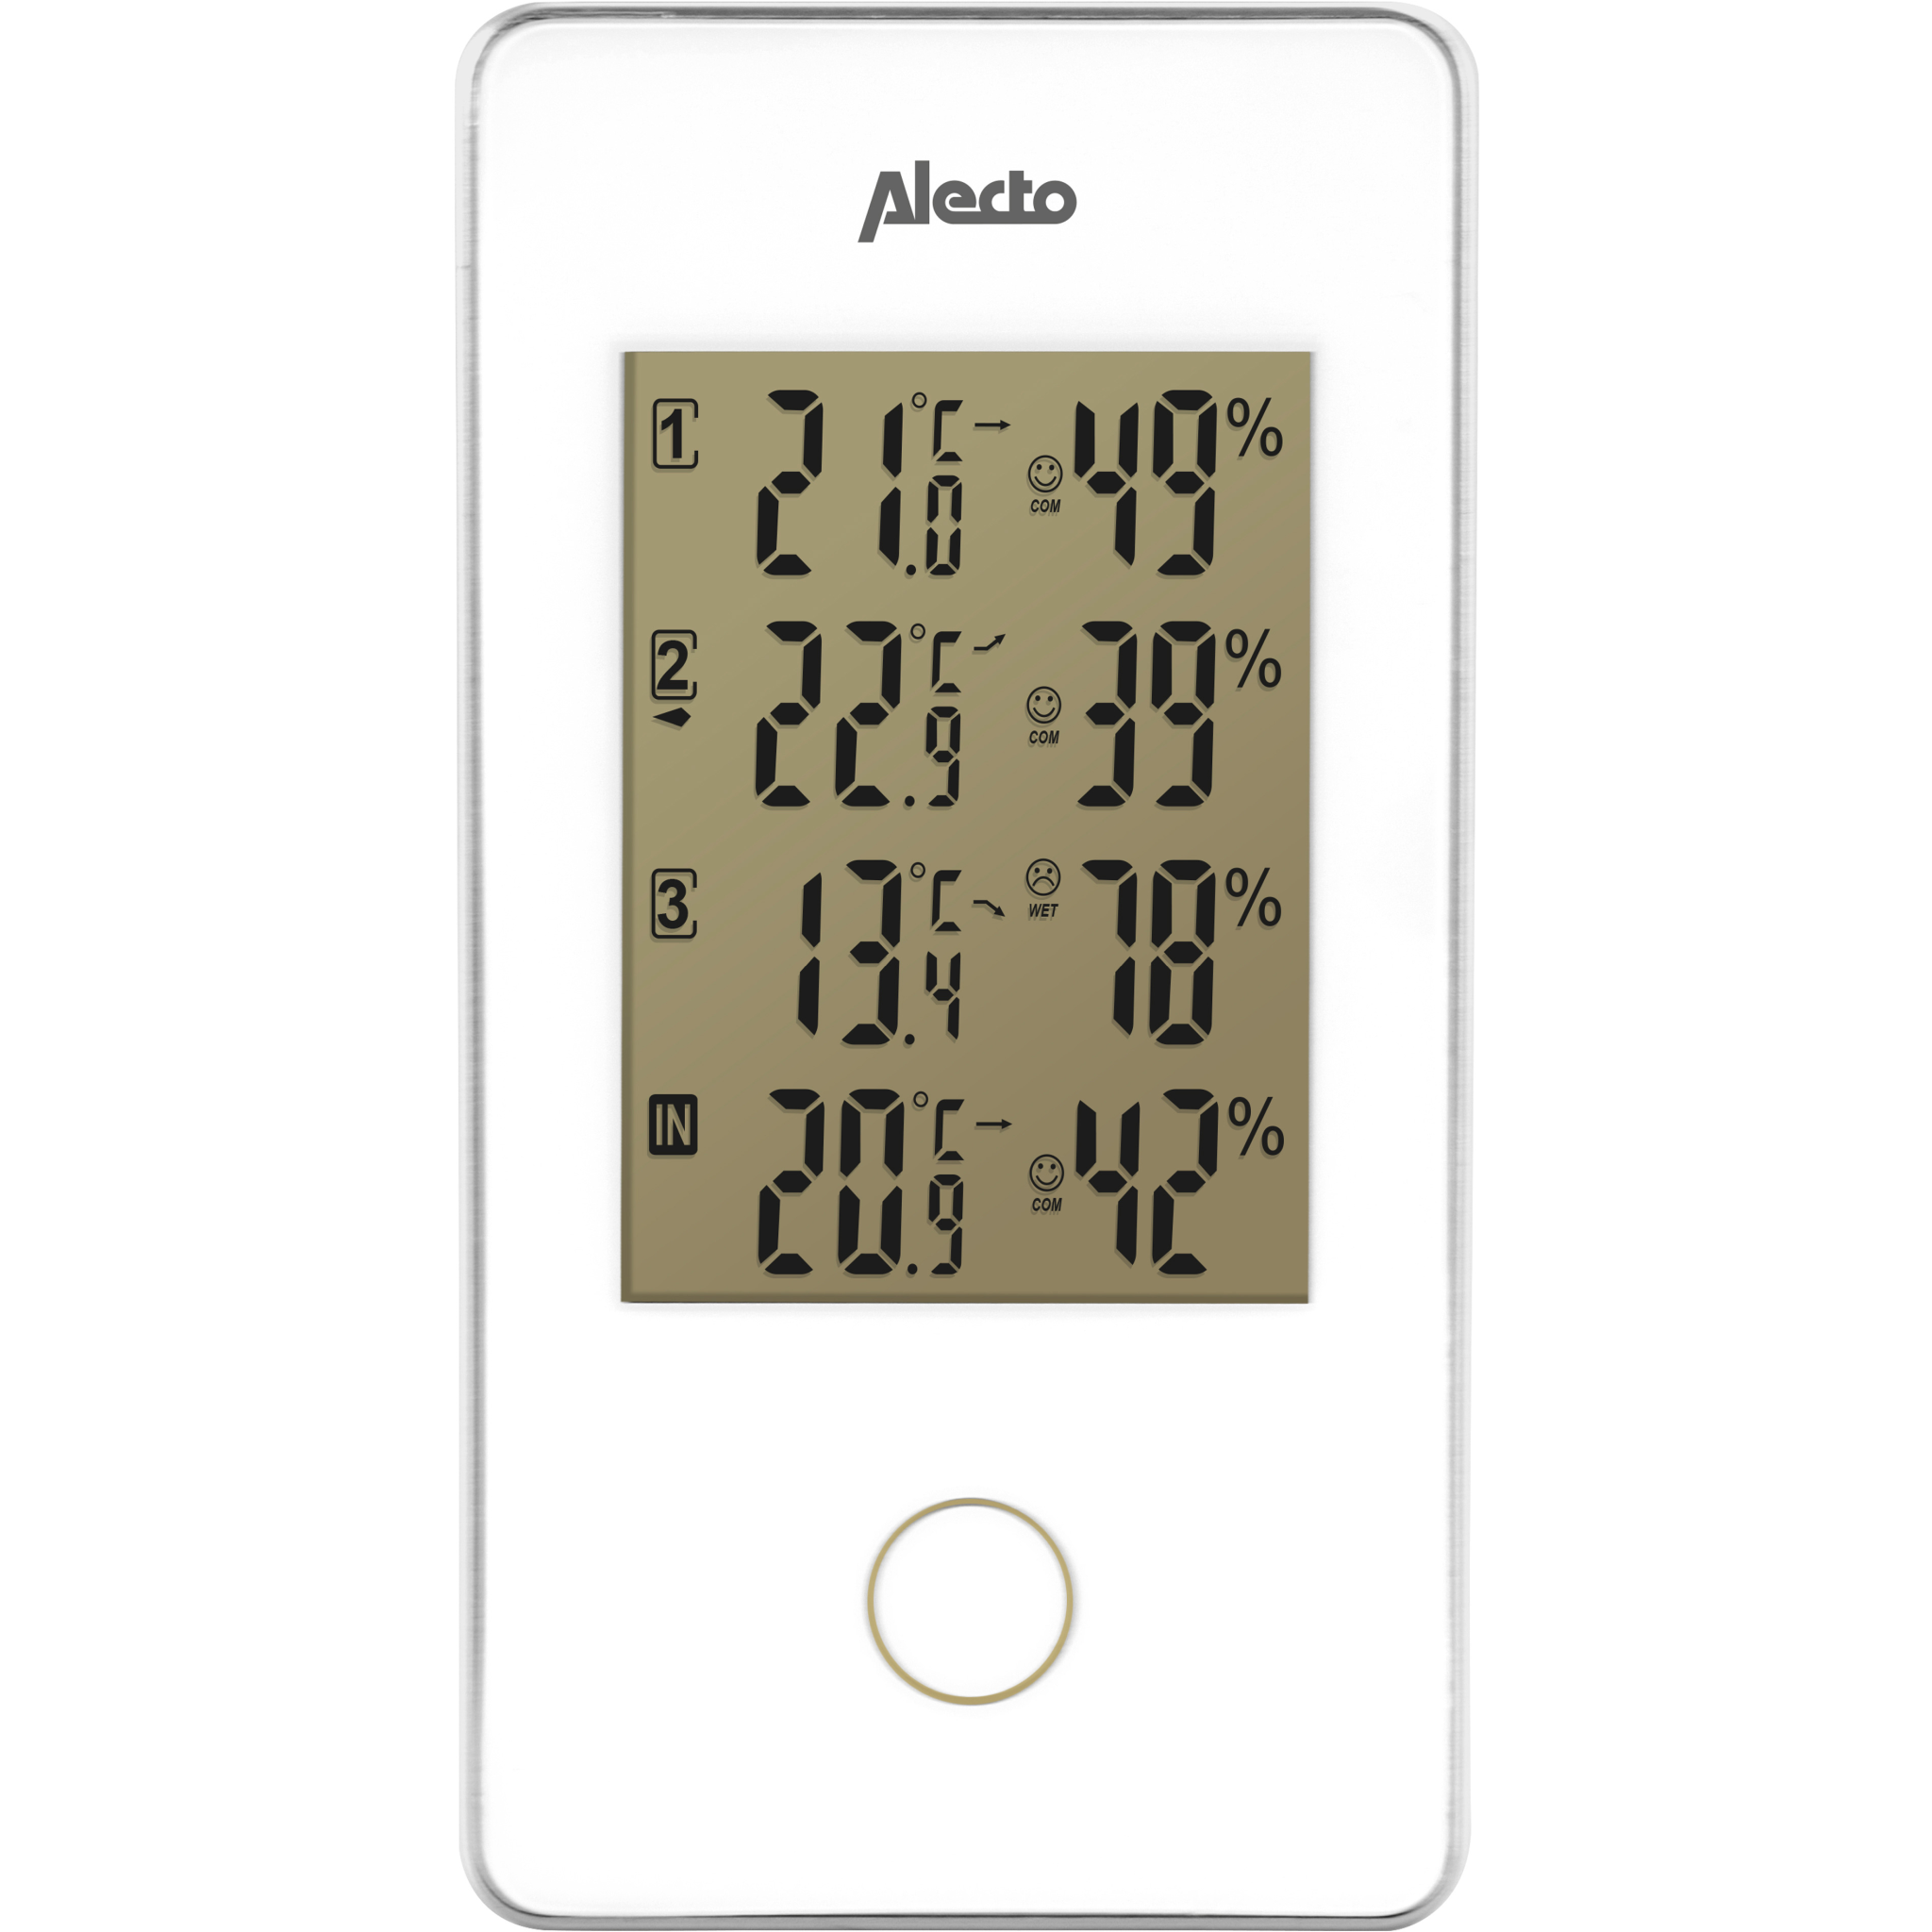 8712412579730 Alecto Vejrstation, temperatur, luftfugtighed m/3 sensor Hus & Have,Smart Home,Vejrstationer 5800000290 A004030